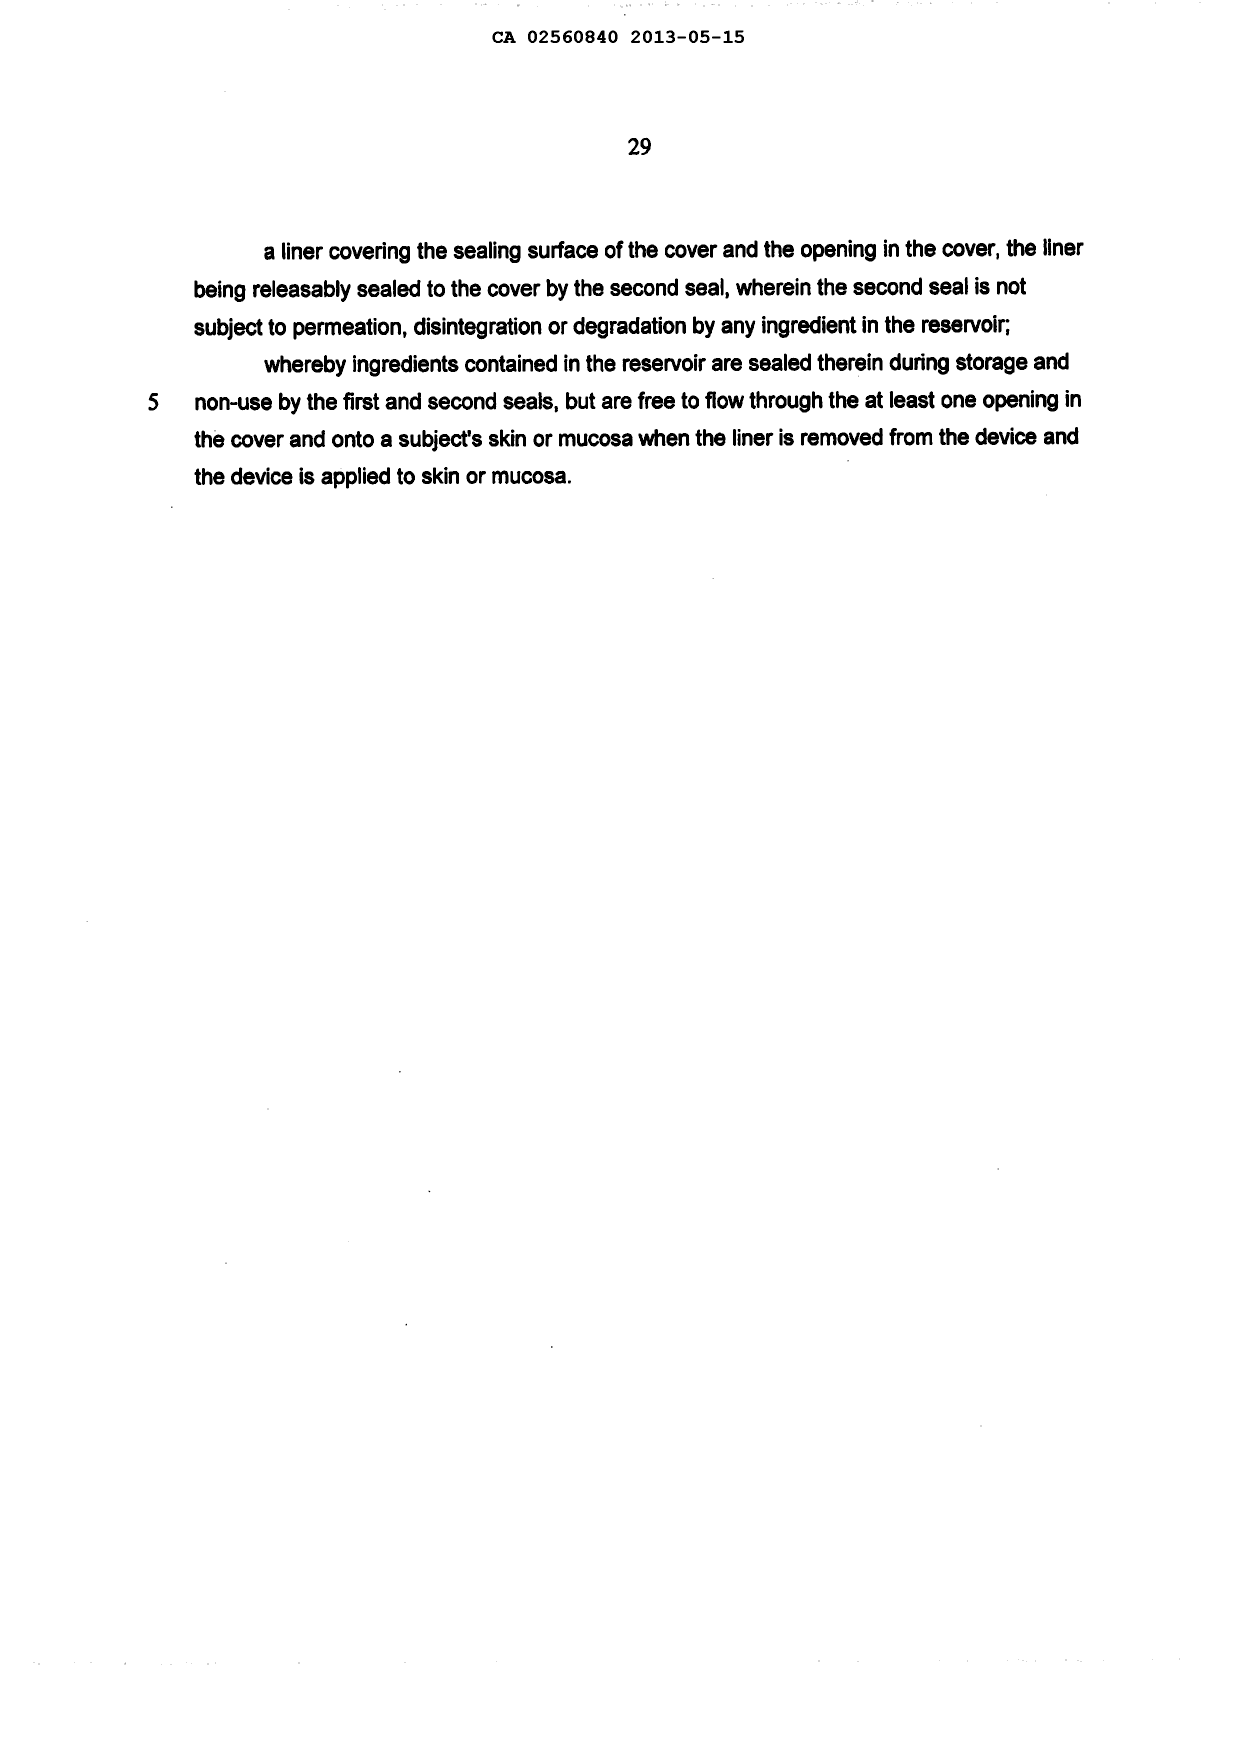 Document de brevet canadien 2560840. Poursuite-Amendment 20121215. Image 6 de 6